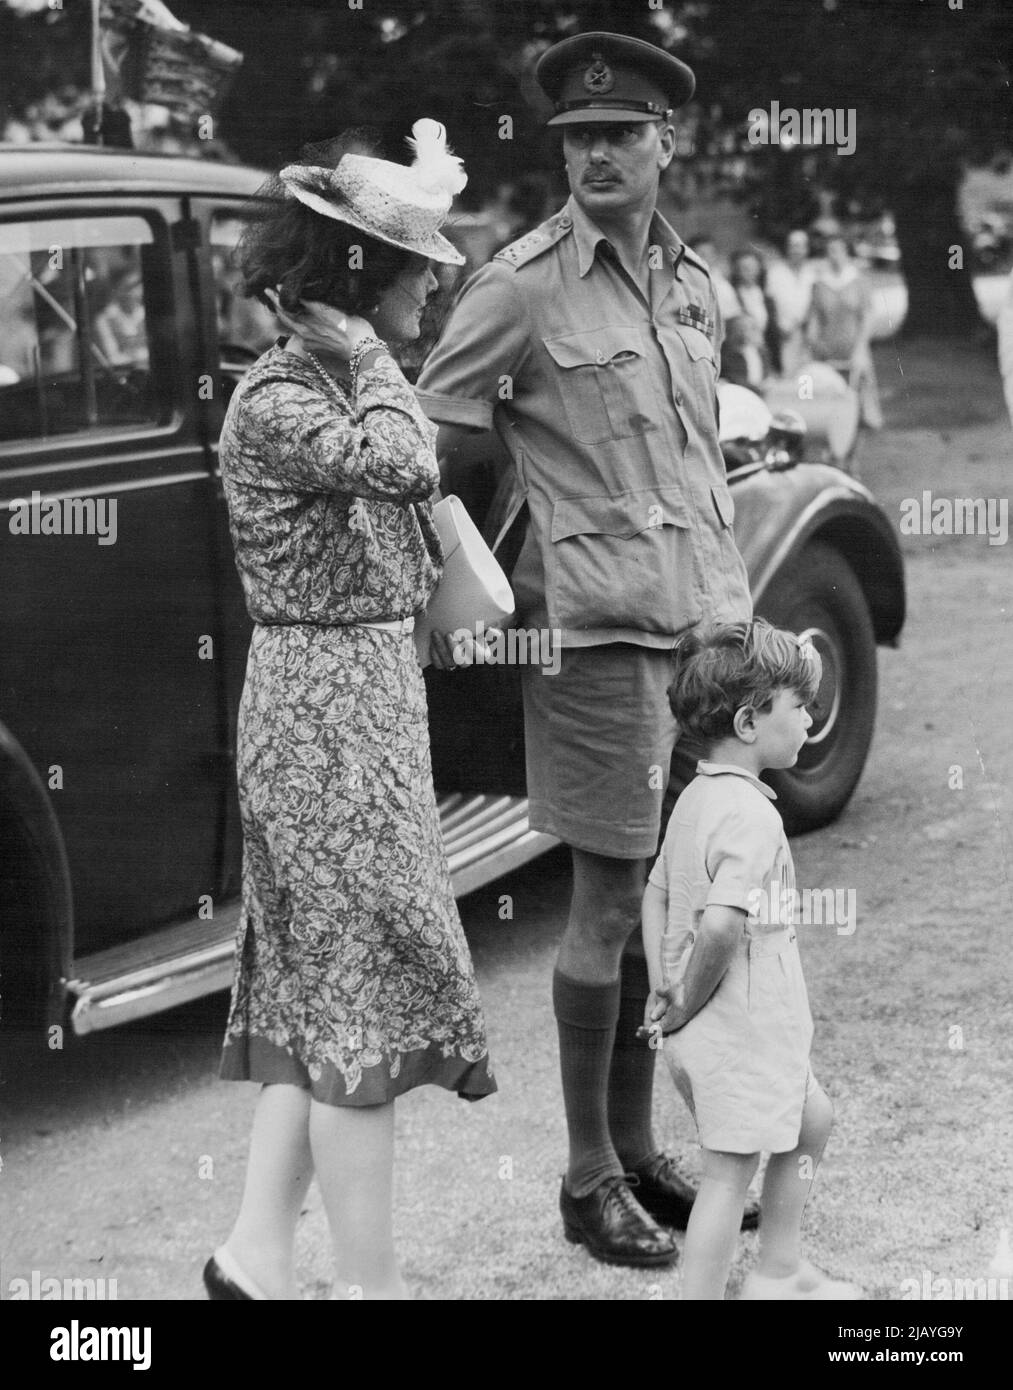 Gruppo di famiglie: Il governatore generale reale dell'Australia, il duca di Gloucester, con la duchessa e il principe Guglielmo, preso a Marulan la notte scorsa quando la festa si riposò sulla strada per Canberra. Gennaio 30, 1945. Foto Stock